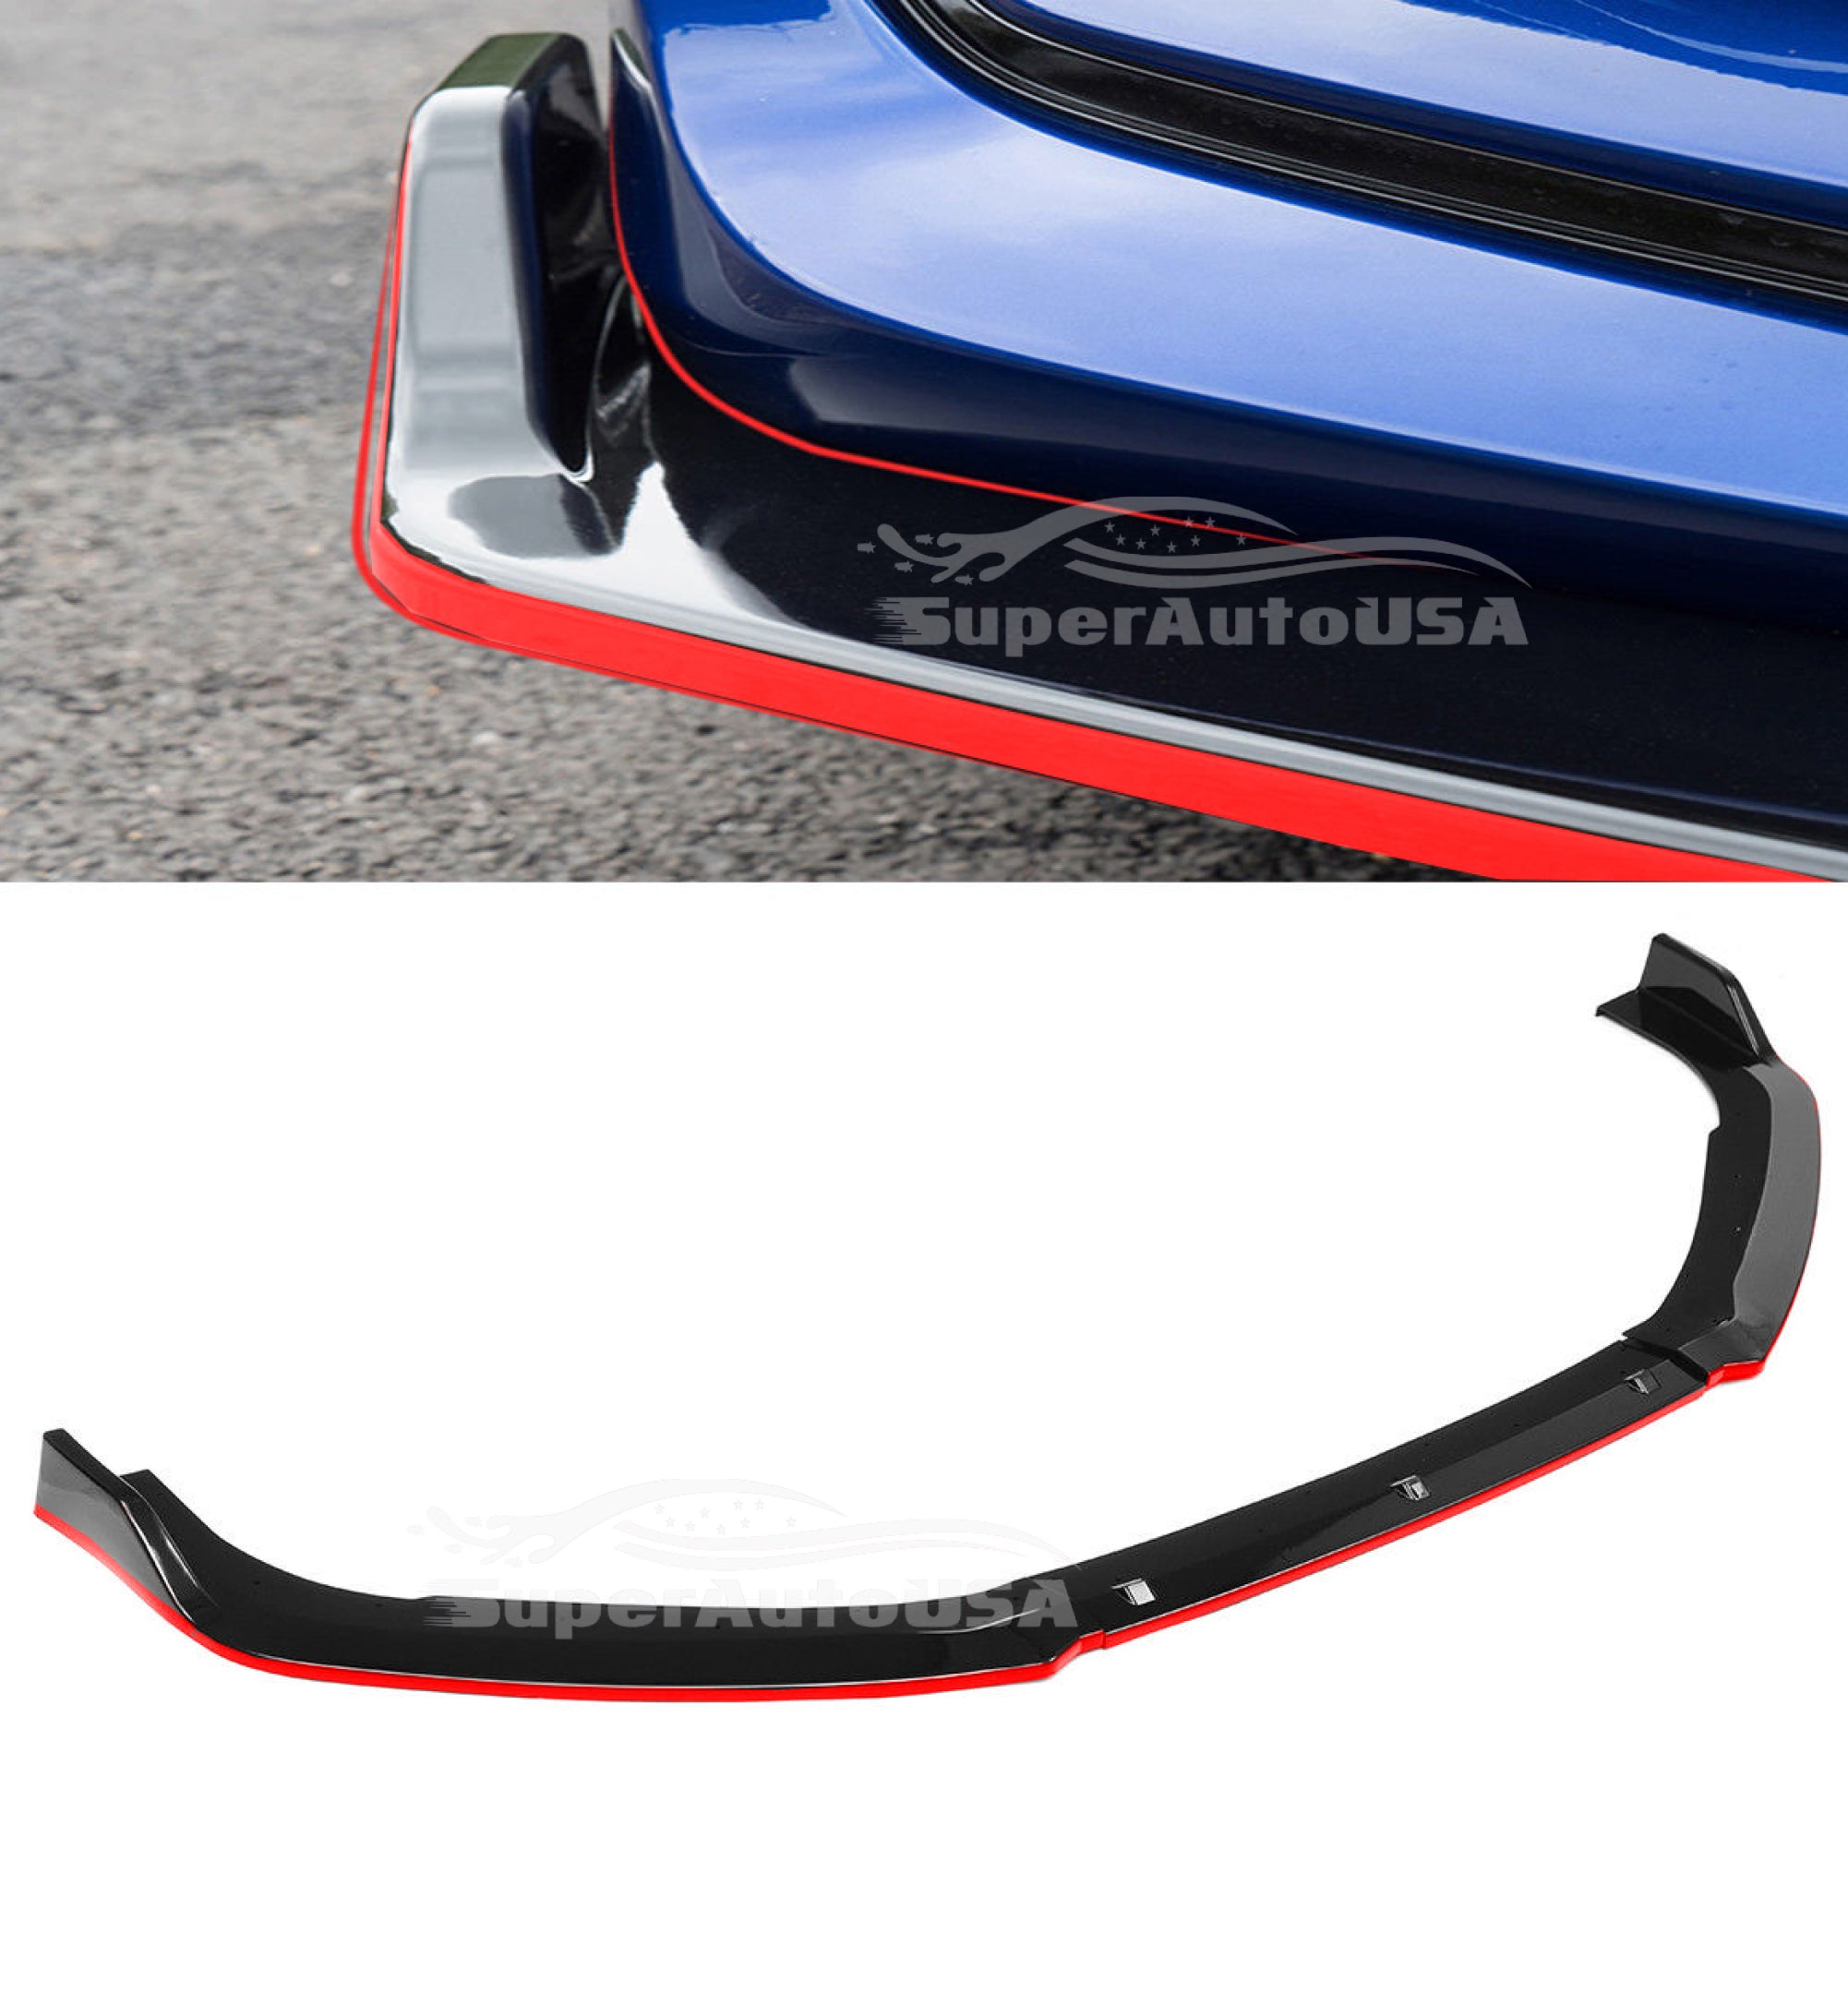 Se adapta al alerón de parachoques delantero Honda Accord 2013-2017 (negro brillante con borde rojo)